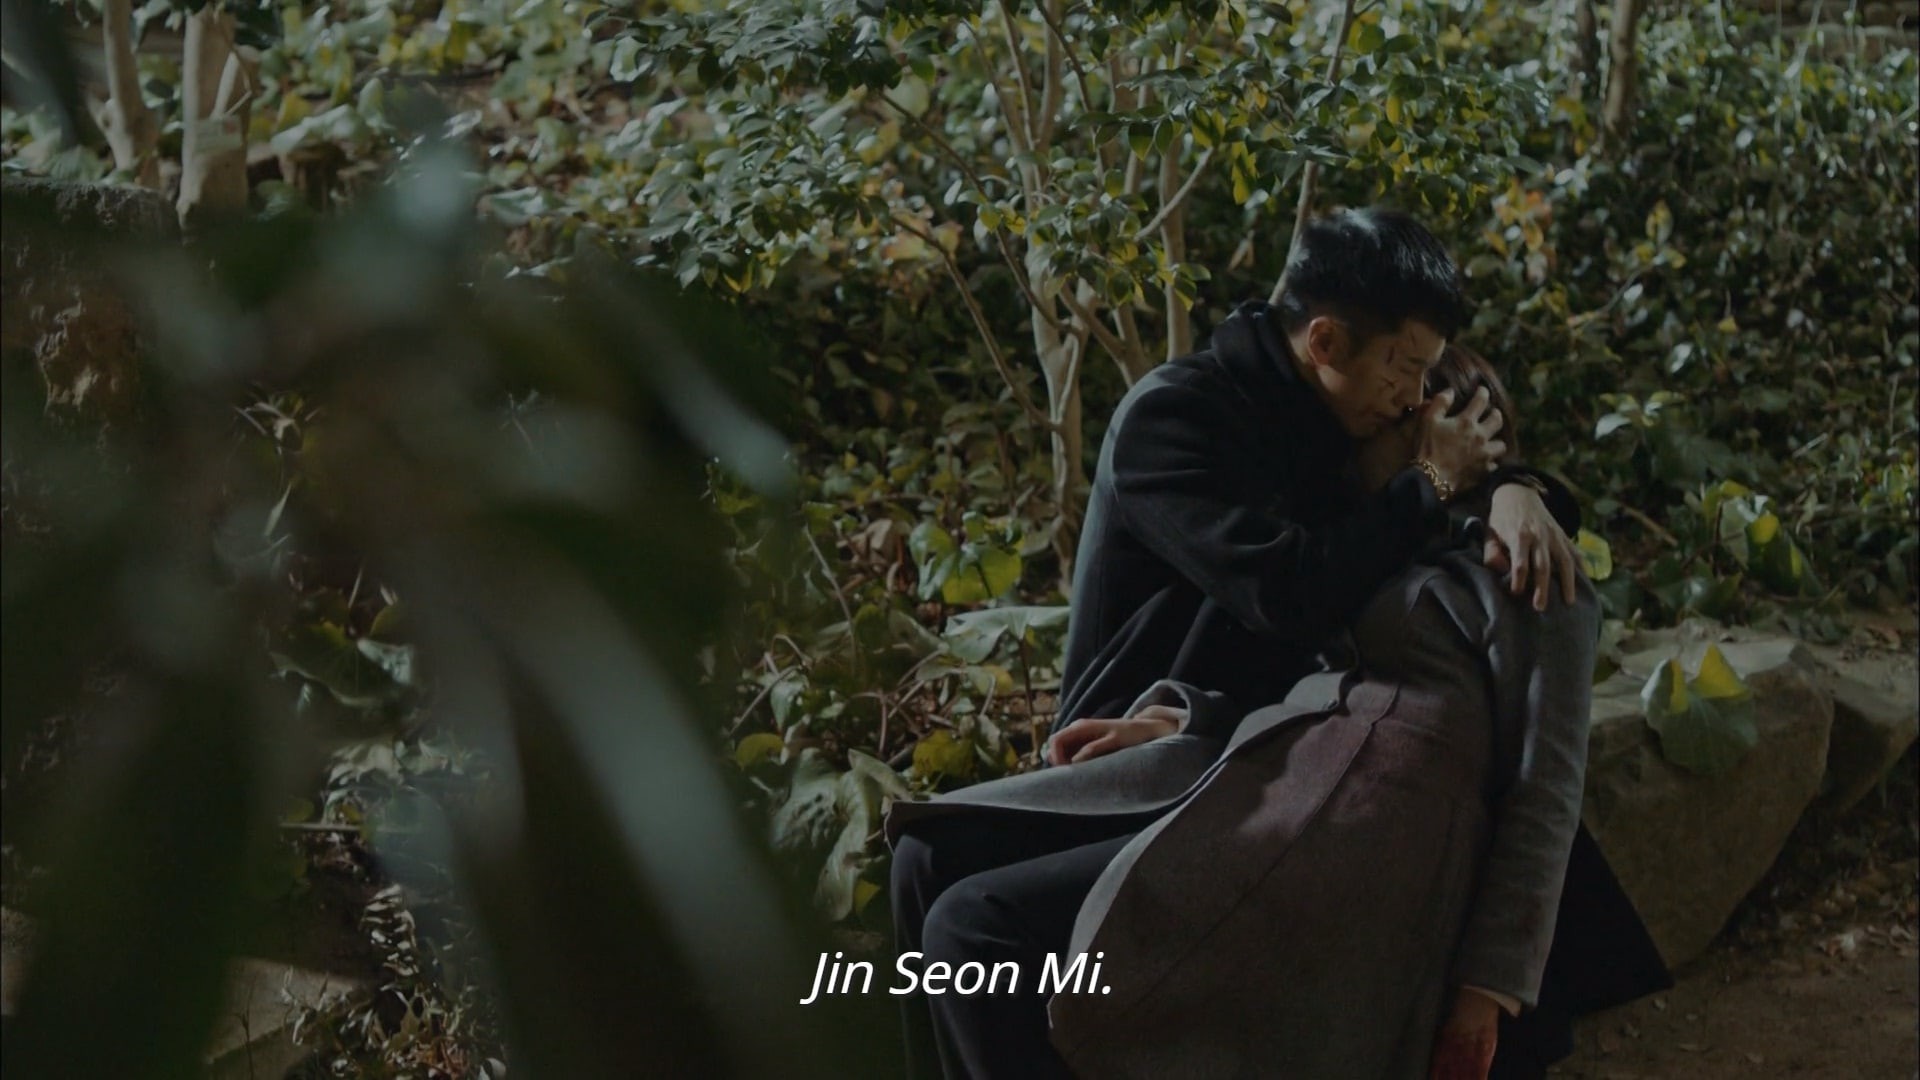 Phim Hàn quốc luôn có một câu chuyện đầy cảm xúc, tình cảm và đặc biệt là sự trưởng thành. Hình ảnh liên quan đến phim Hàn quốc sẽ giúp bạn khám phá thêm nhiều điều thú vị và cảm nhận đắm say những câu chuyện đầy triết lý.